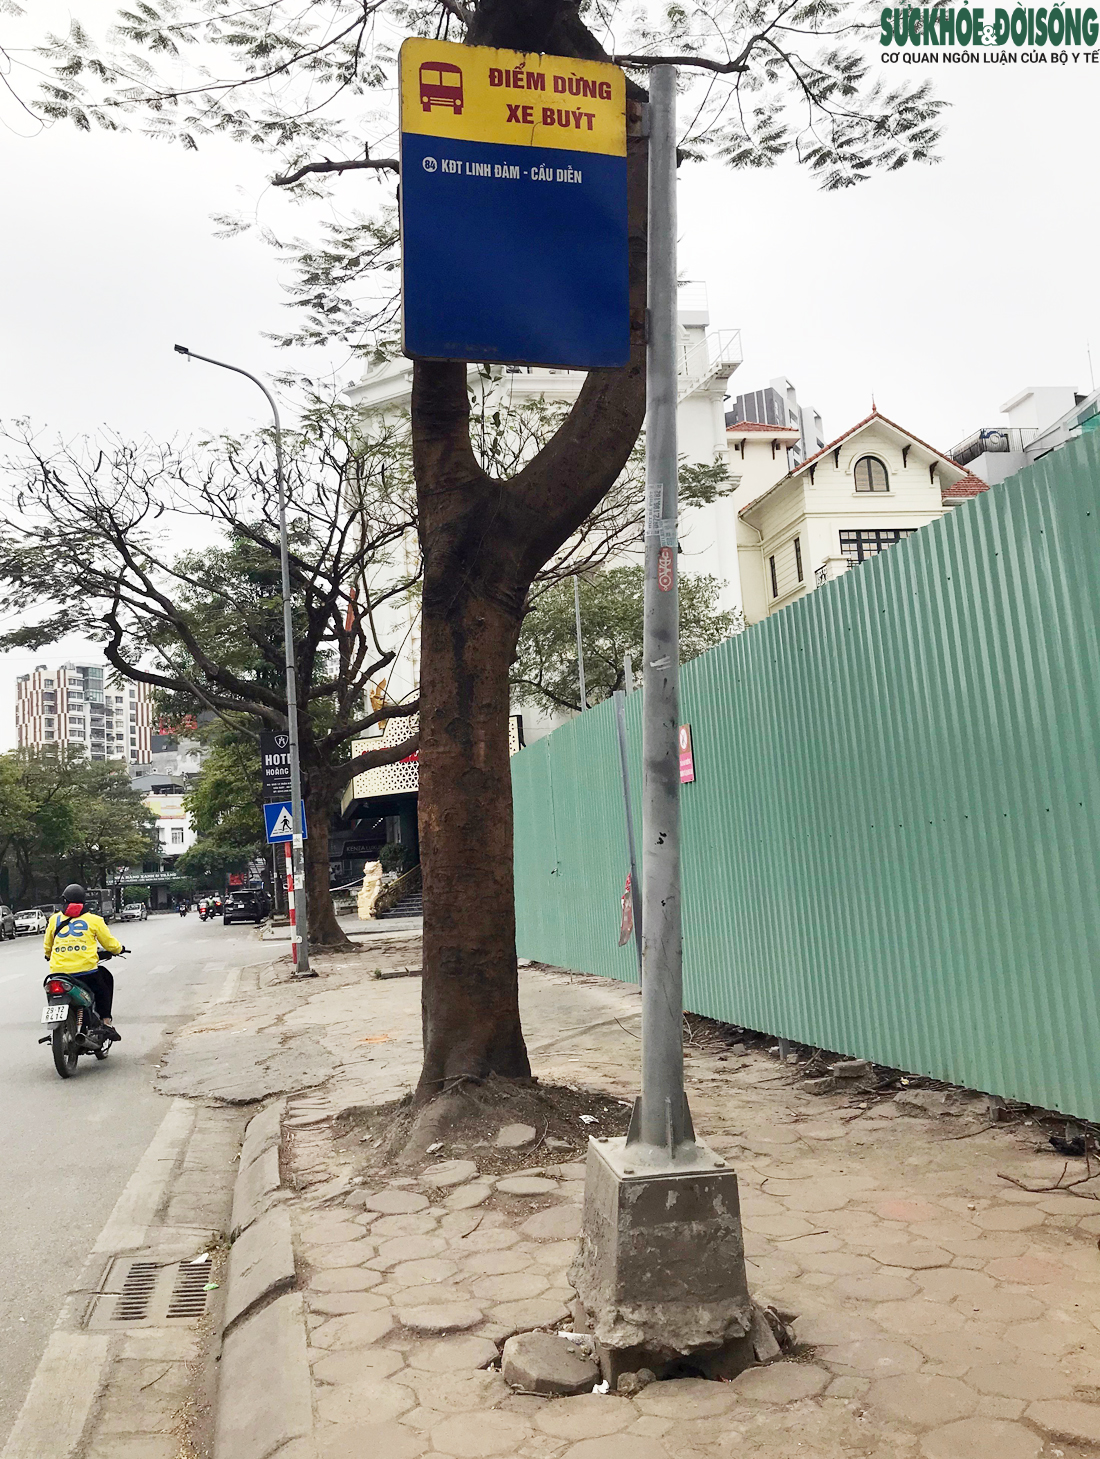 Nhiều nhà chờ xe buýt ở Hà Nội xuống cấp, nhếch nhác đến khó tin - Ảnh 11.